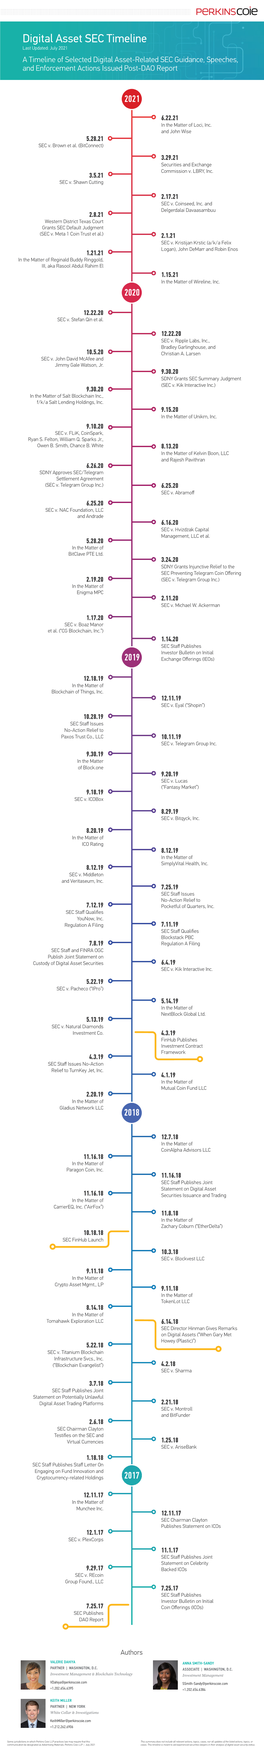 Updated Digital Asset SEC Timeline